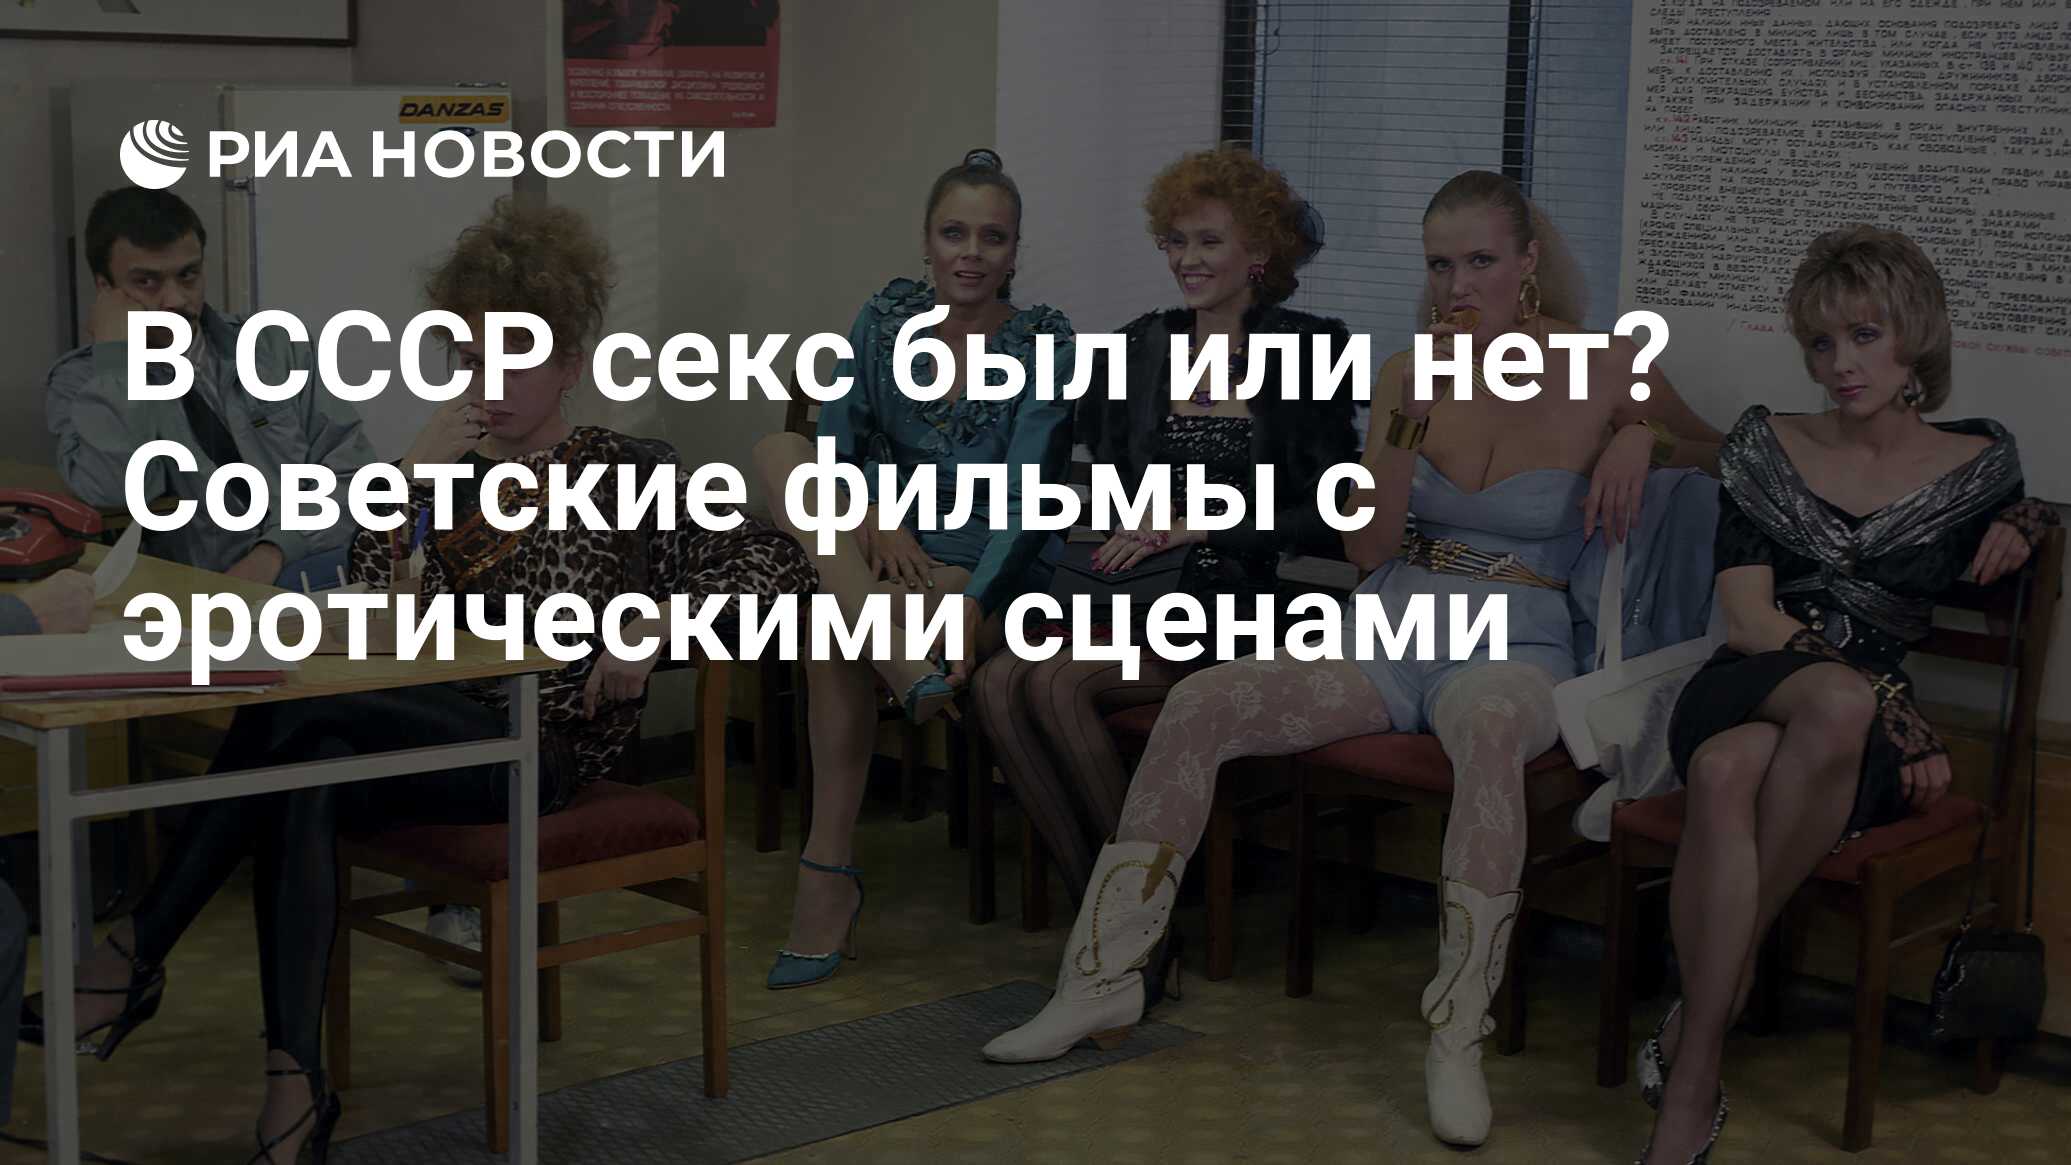 Стало известно, как снимали эротические сцены во времена Советского Союза - grantafl.ru | Новости